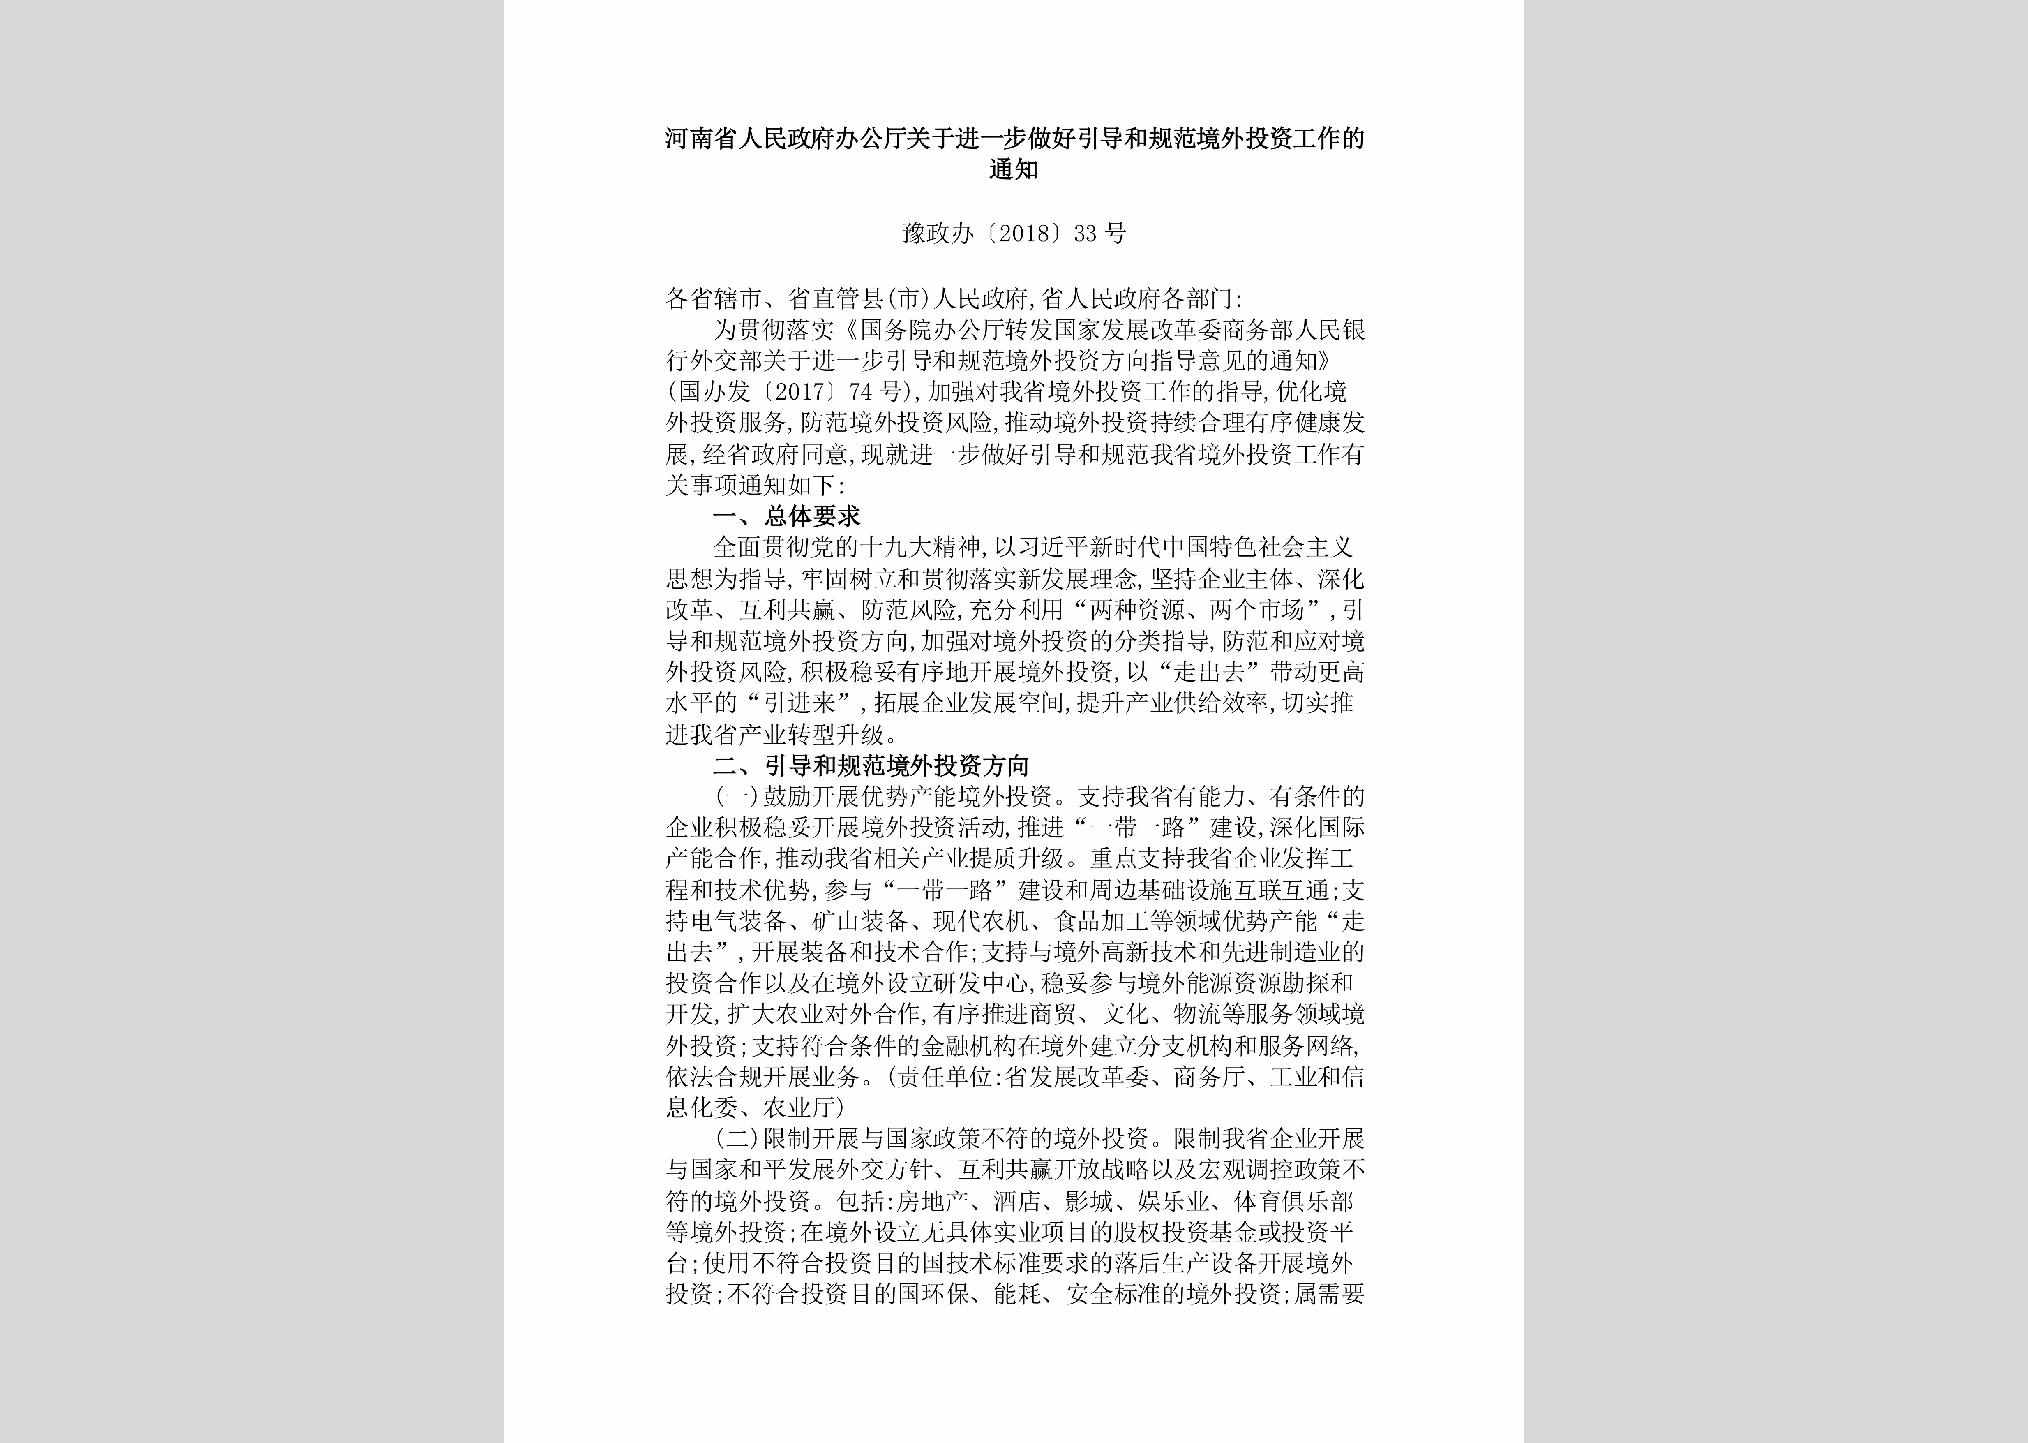 豫政办[2018]33号：河南省人民政府办公厅关于进一步做好引导和规范境外投资工作的通知